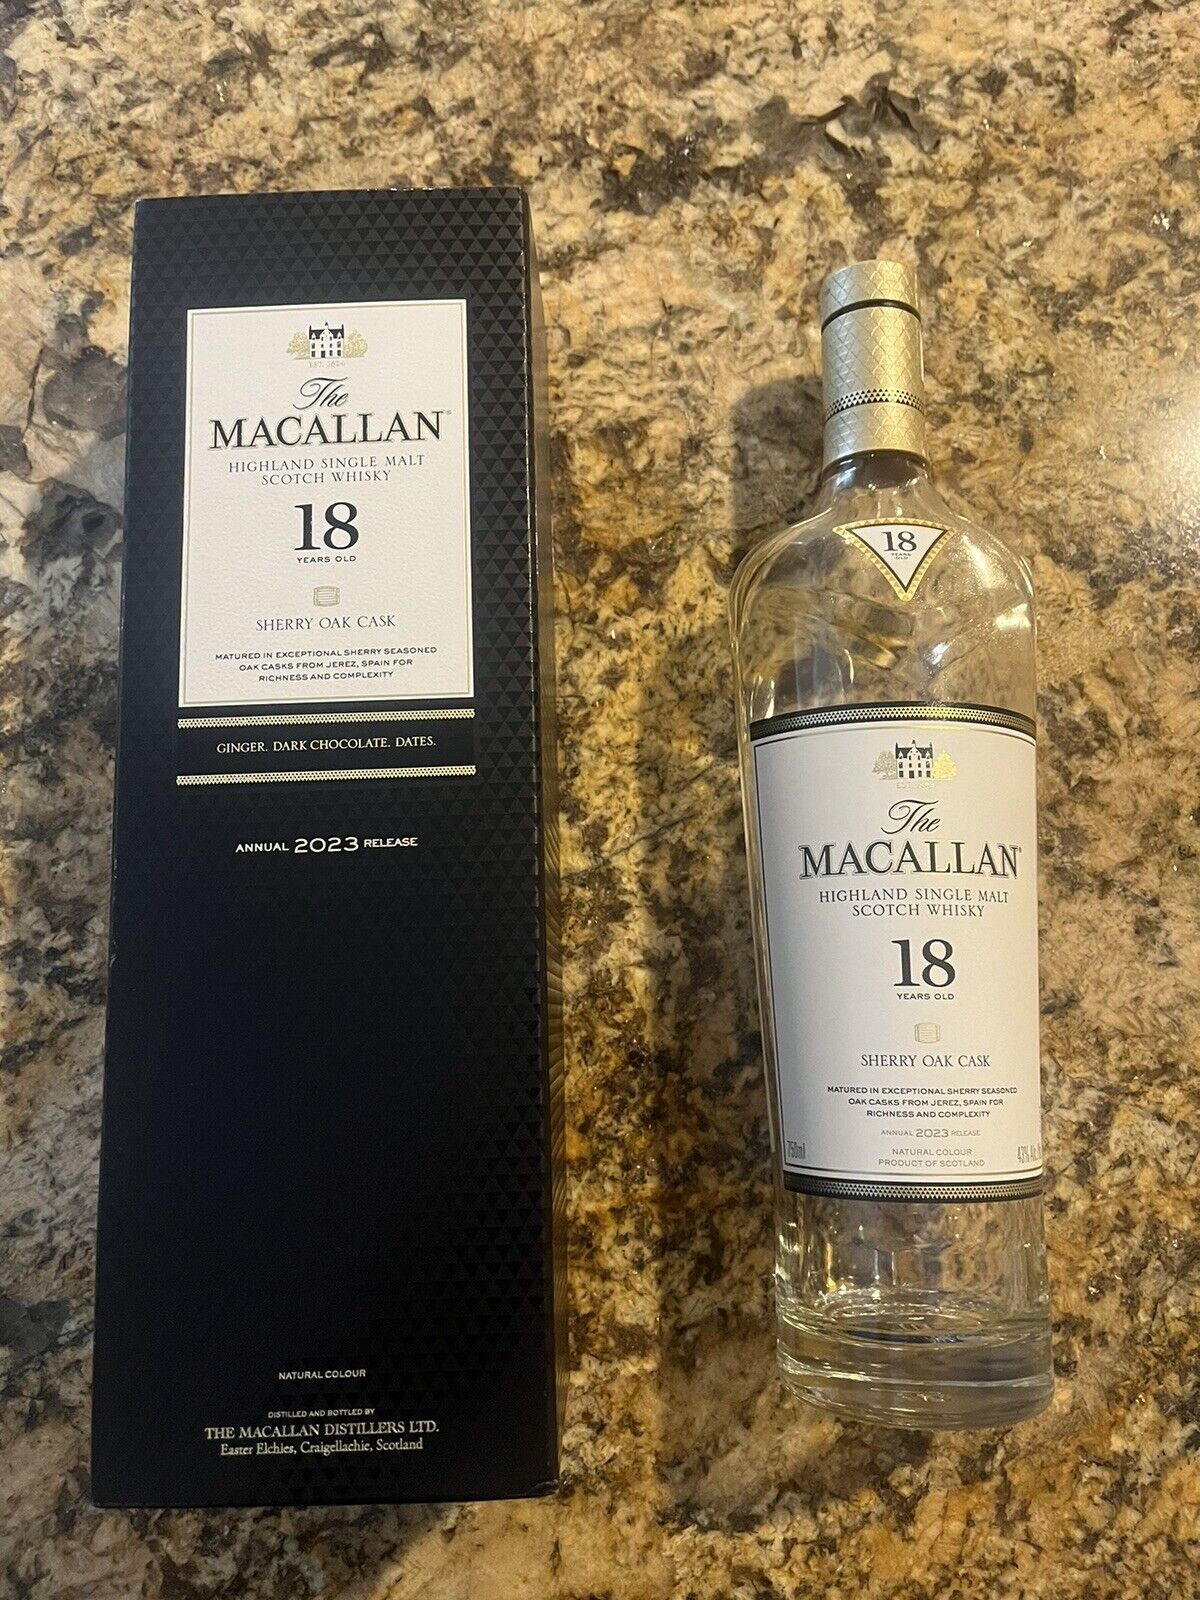 The Macallan 18 yr old Sherry Oak Cask Empty Bottle/ Box. 2023 Limited Release